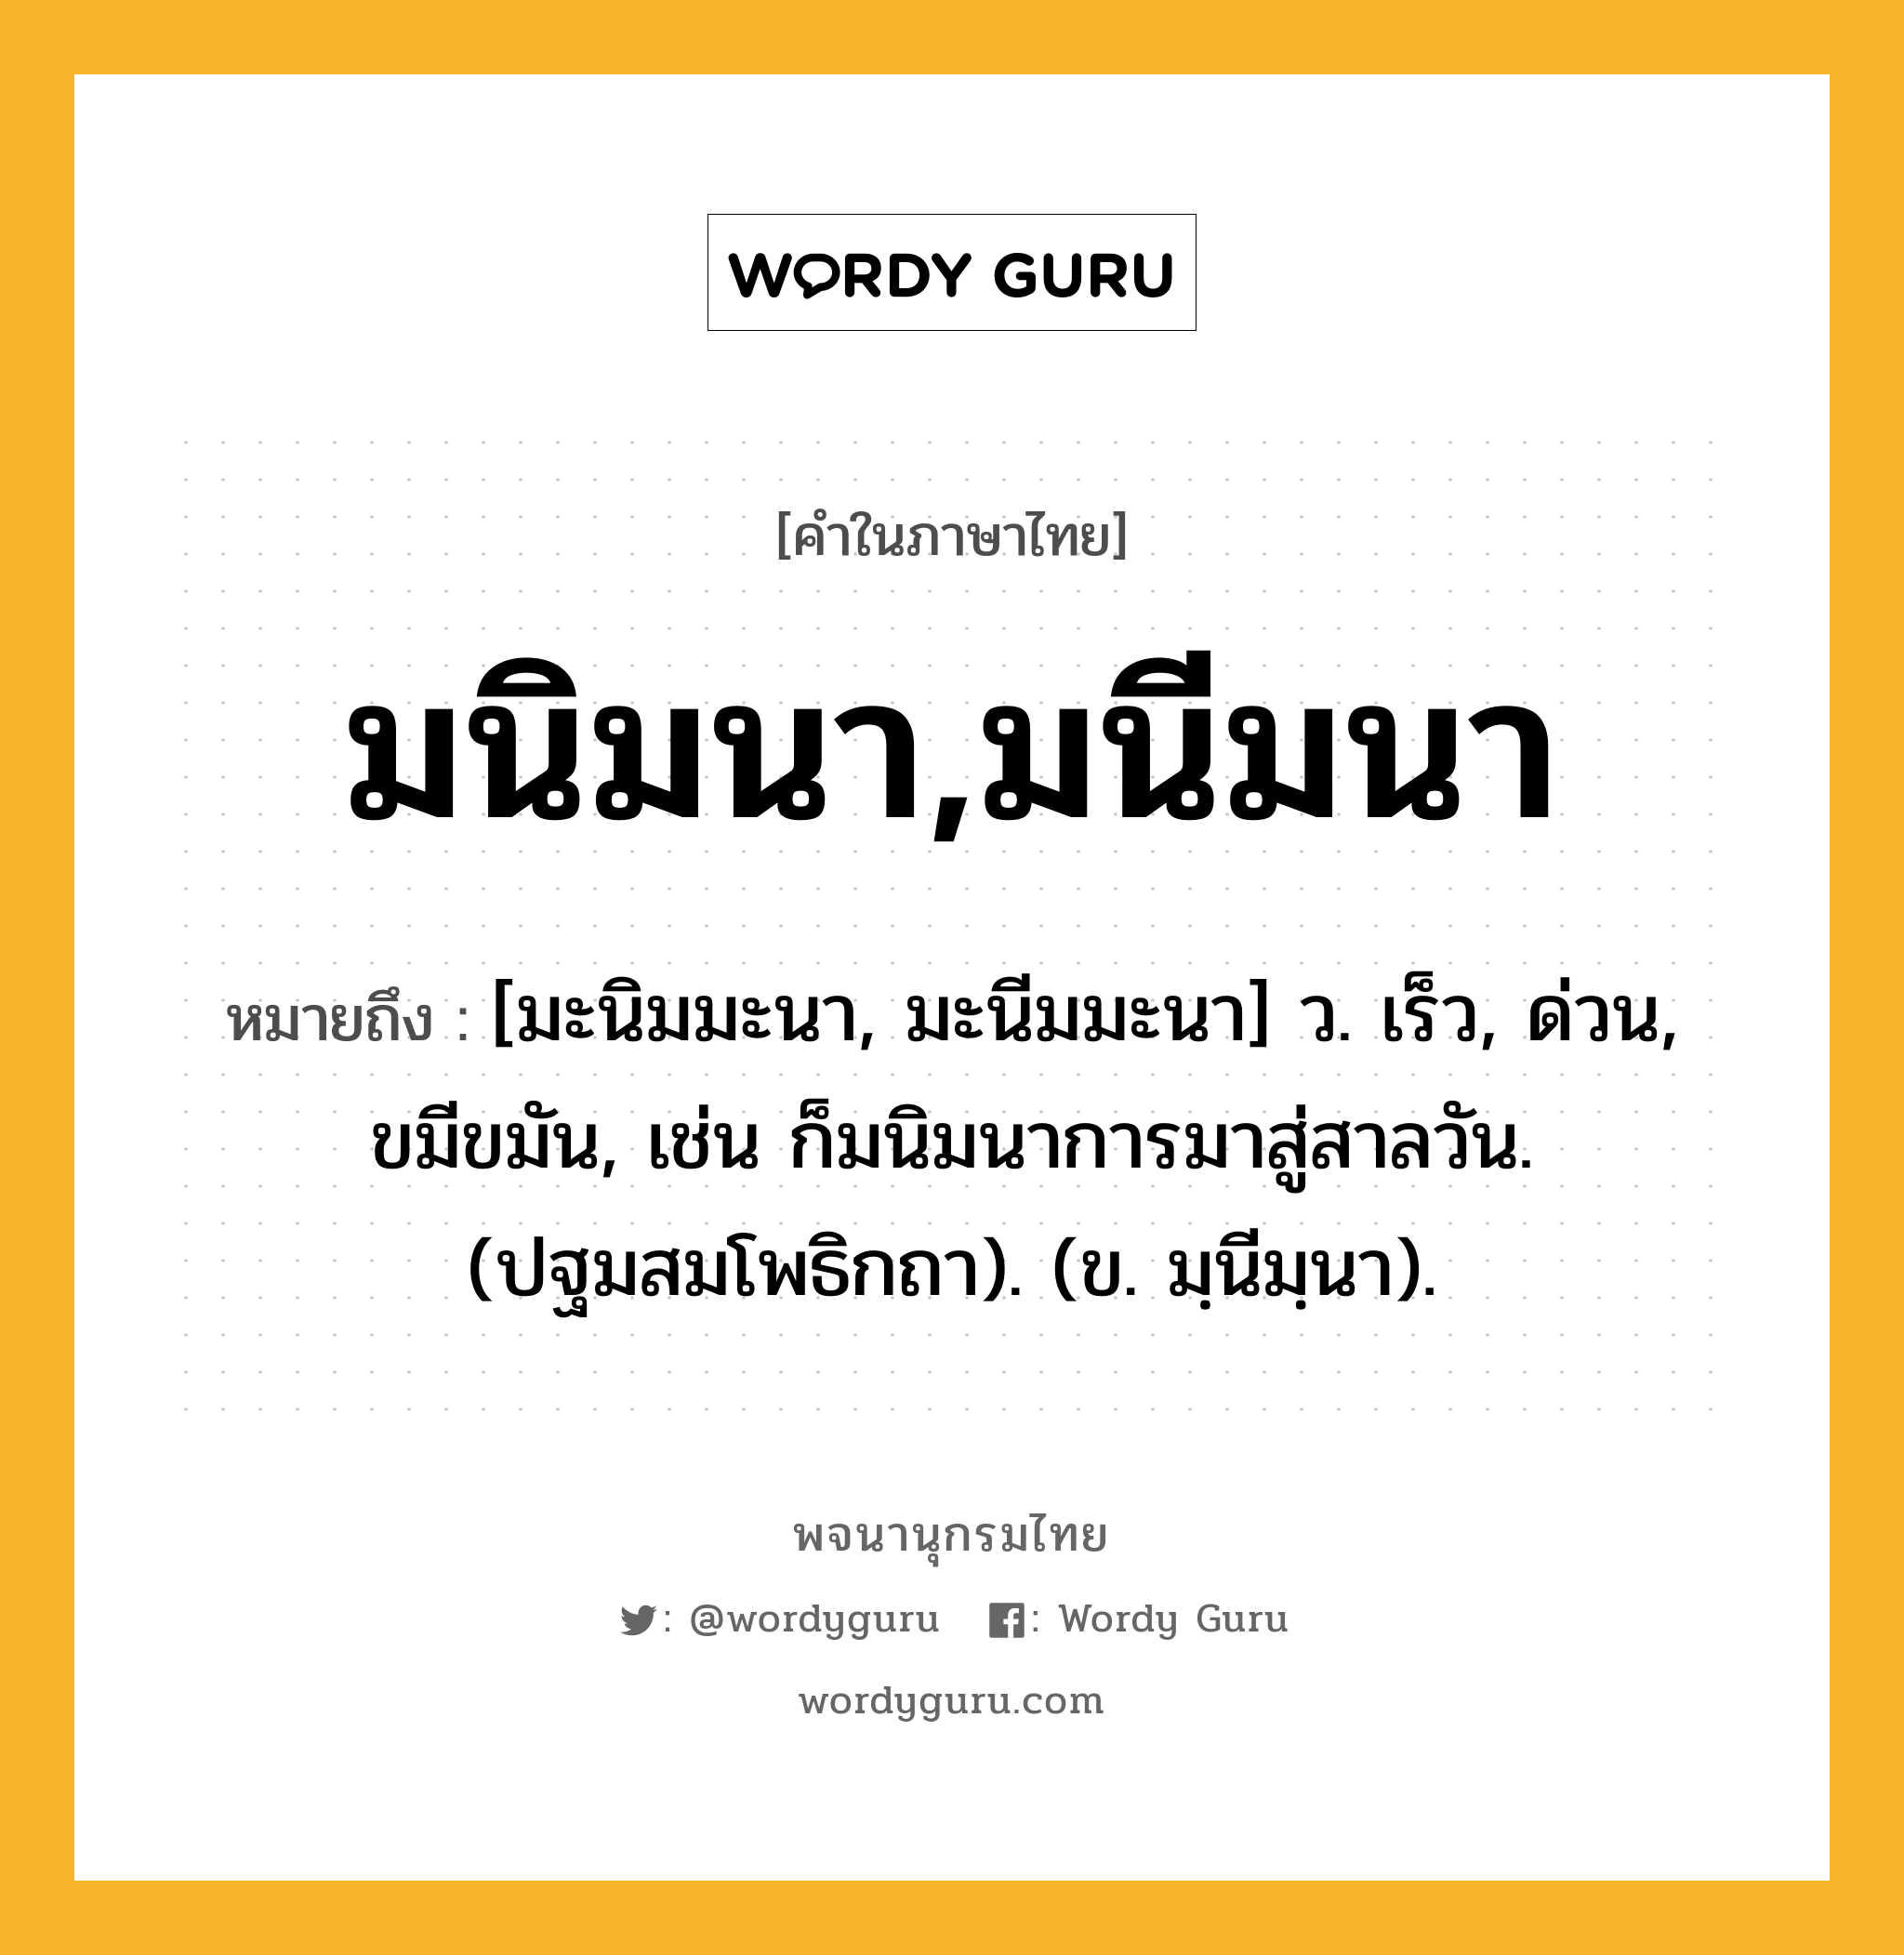 มนิมนา,มนีมนา หมายถึงอะไร?, คำในภาษาไทย มนิมนา,มนีมนา หมายถึง [มะนิมมะนา, มะนีมมะนา] ว. เร็ว, ด่วน, ขมีขมัน, เช่น ก็มนิมนาการมาสู่สาลวัน. (ปฐมสมโพธิกถา). (ข. มฺนีมฺนา).